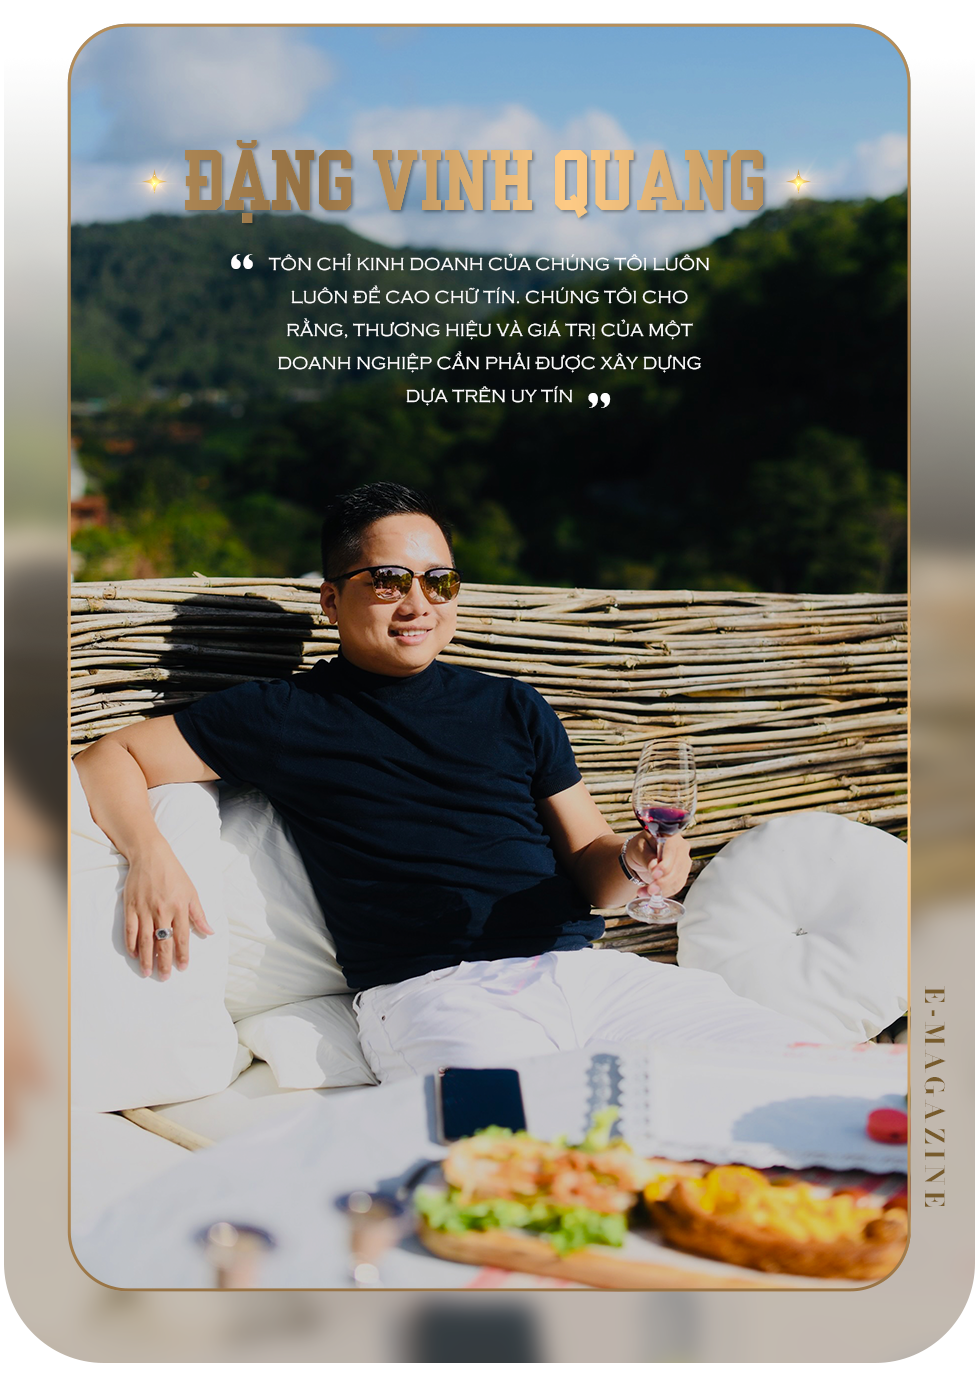 Đặng Vinh Quang – CEO Đăng Quang Watch: “Uy tín là giá trị cốt lõi, bền vững nhất của một thương hiệu” - 7